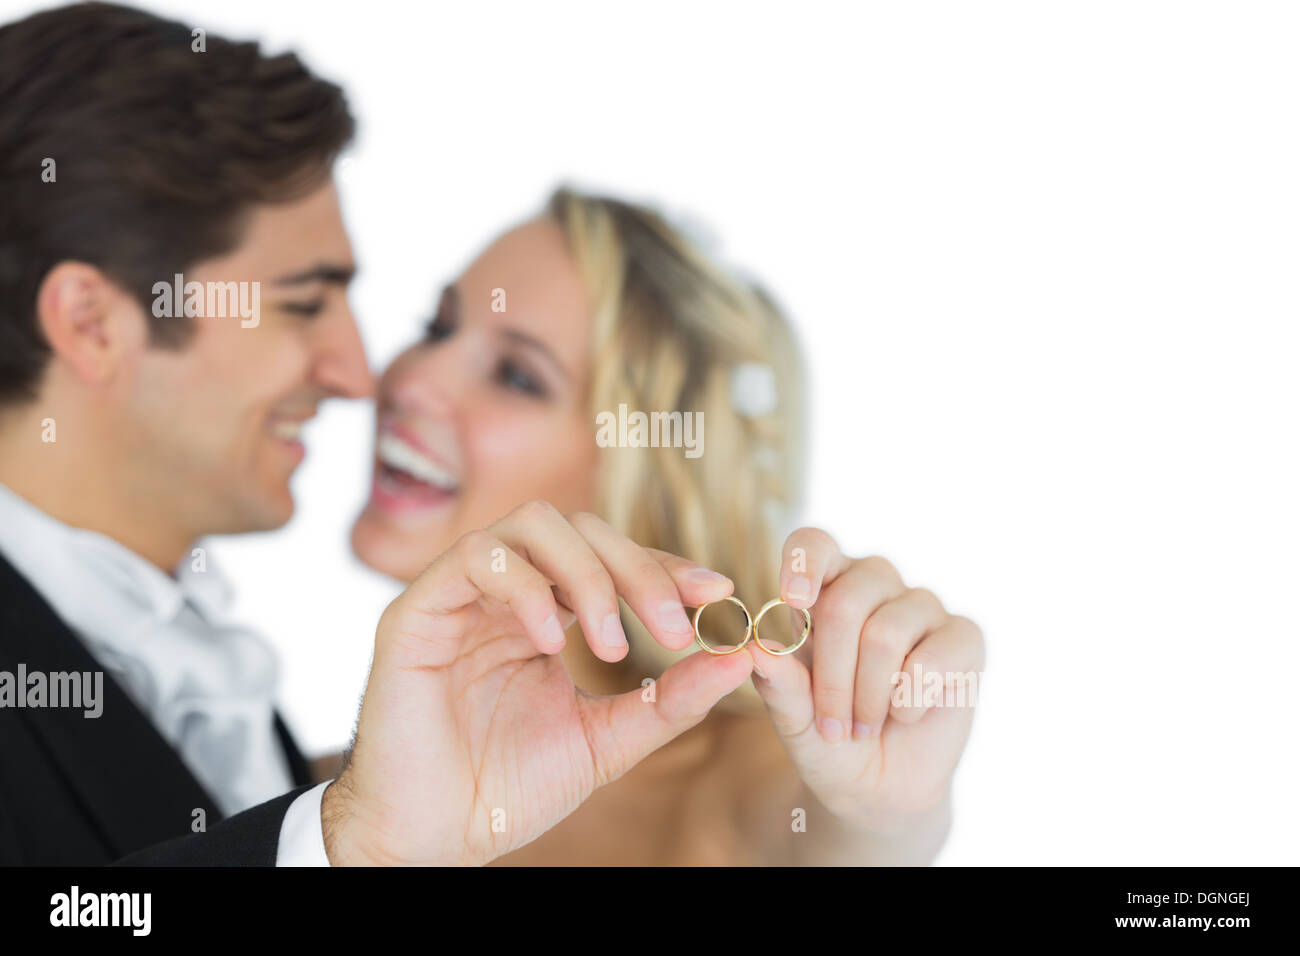 Heureux couple marié attrayant montrant leurs anneaux de mariage Banque D'Images